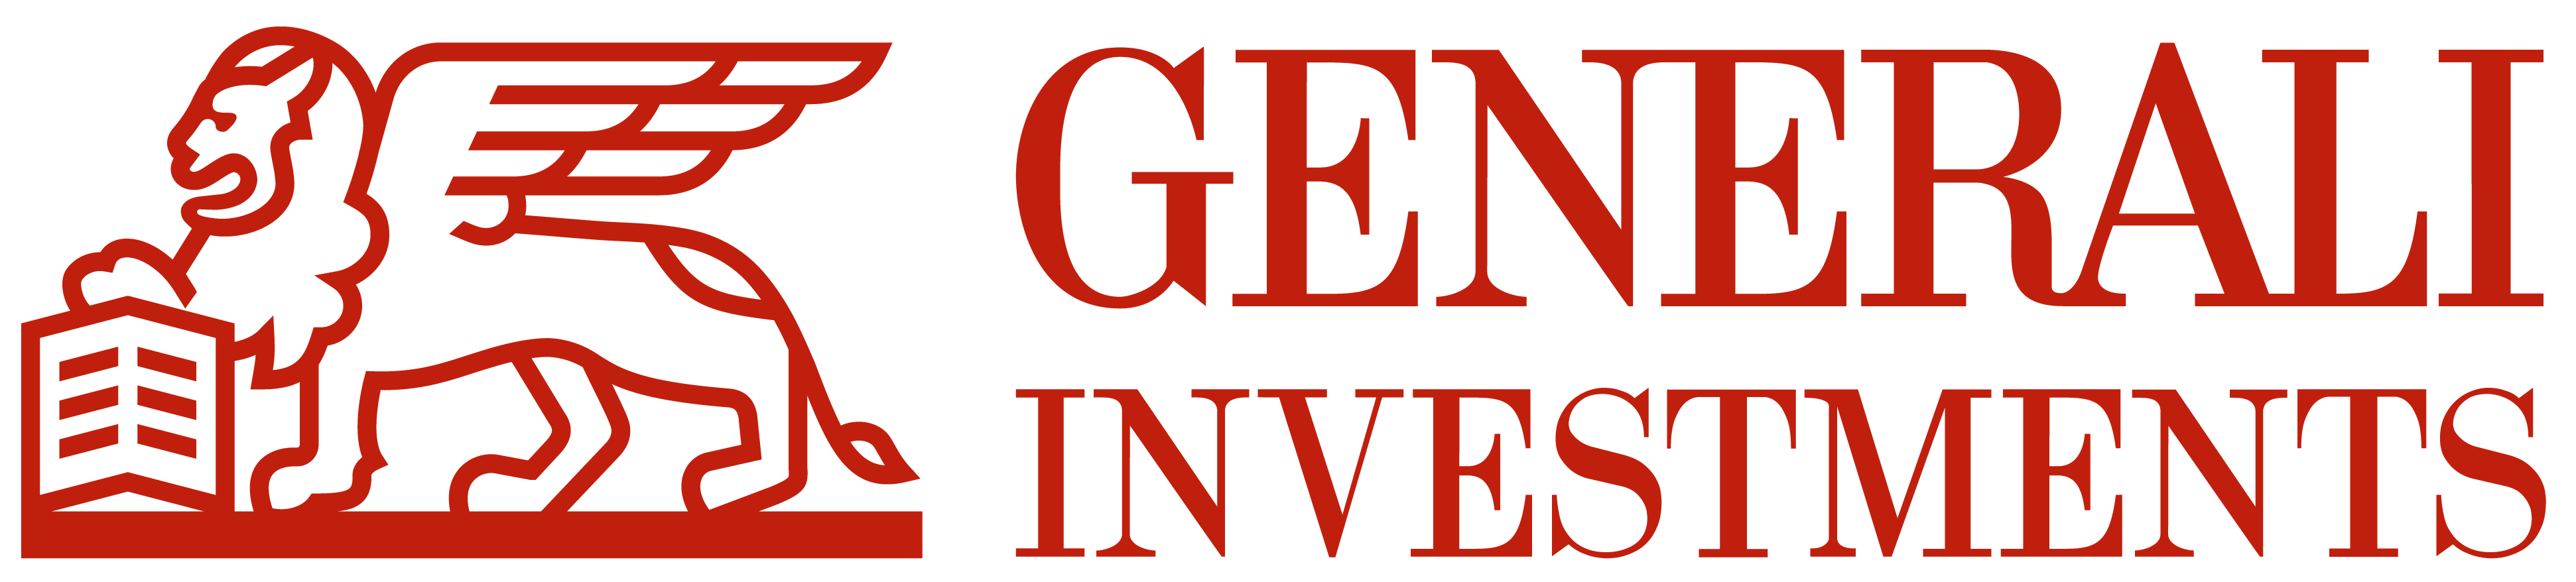 Generali Investments CEE, investiční společnost, a.s.